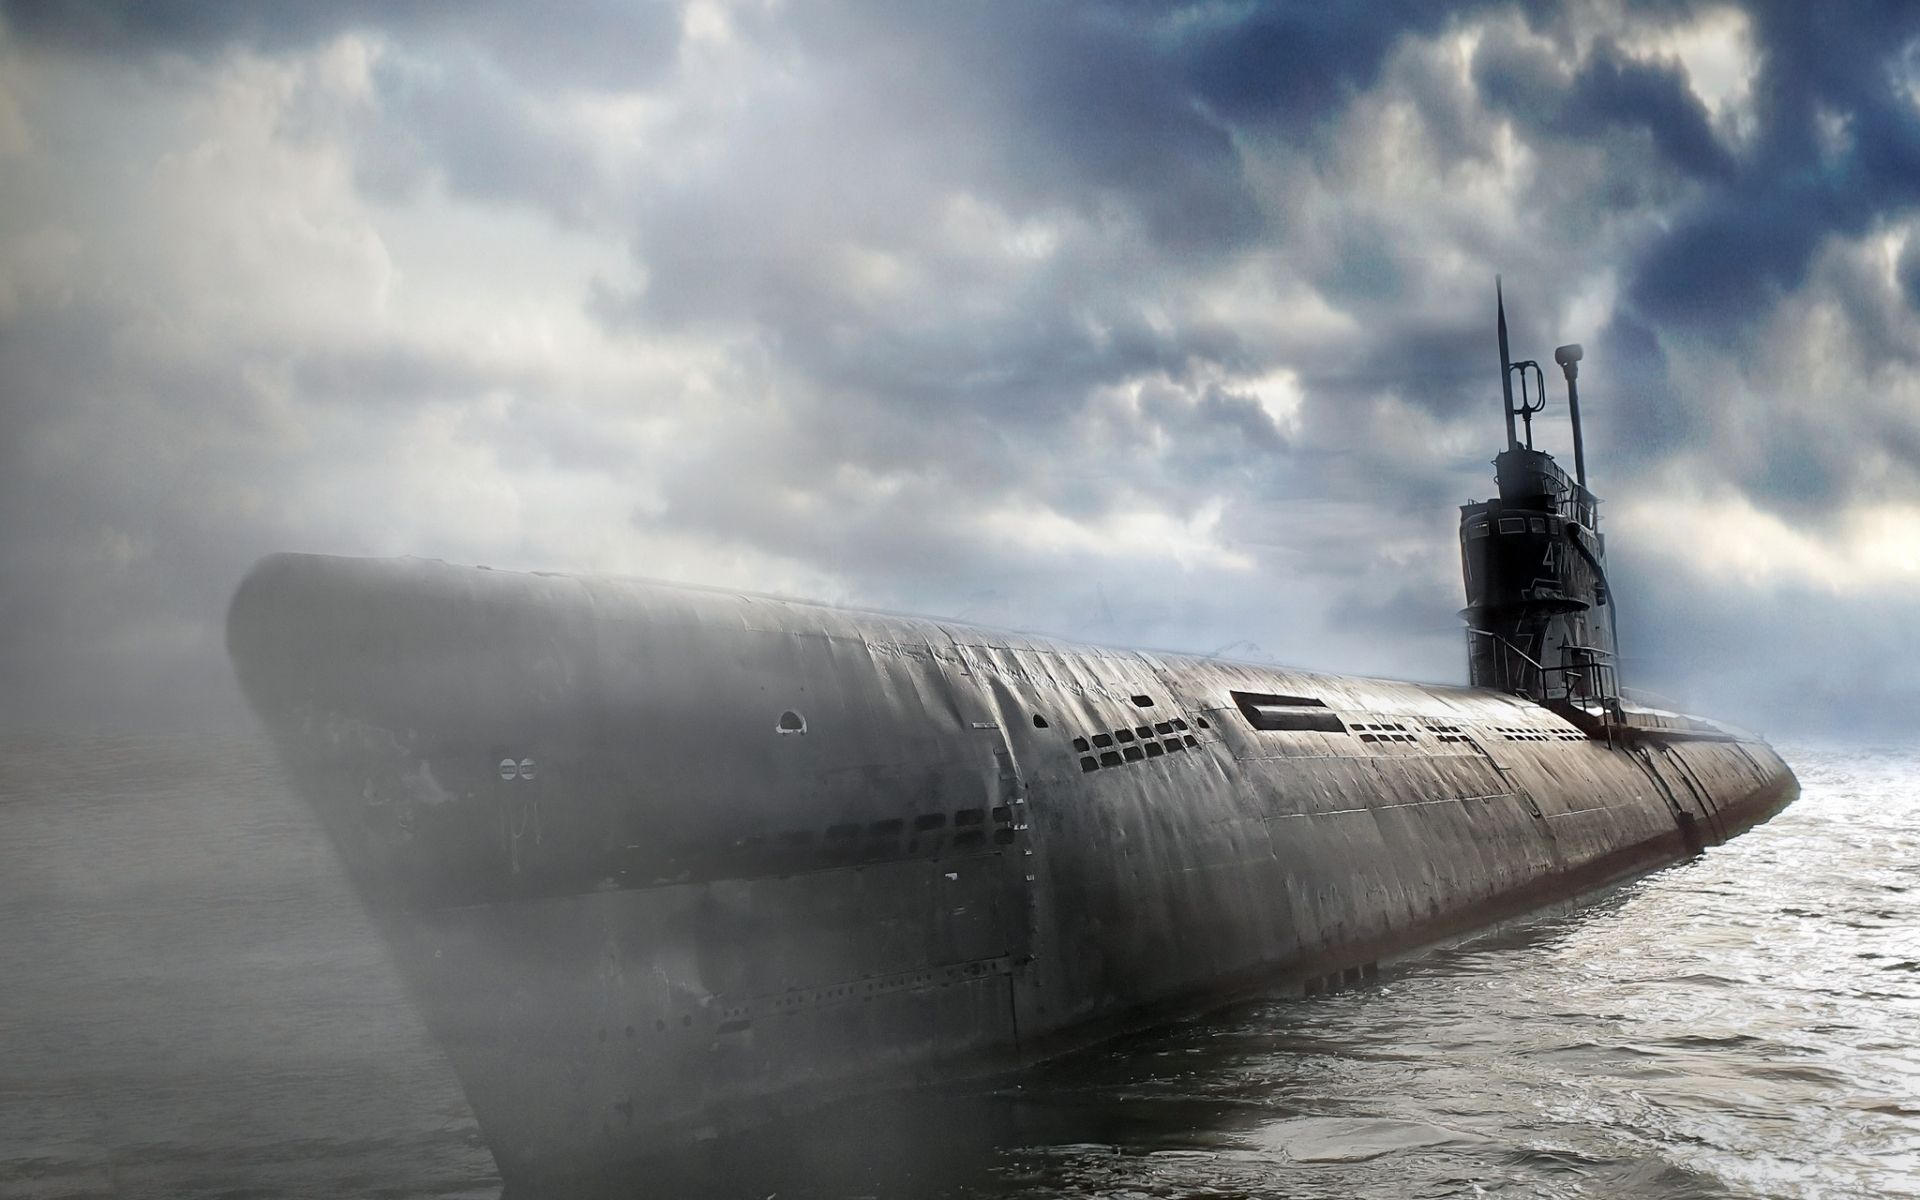  تصویر جالب و زیبا از زیردریایی فوق العاده بزرگ 